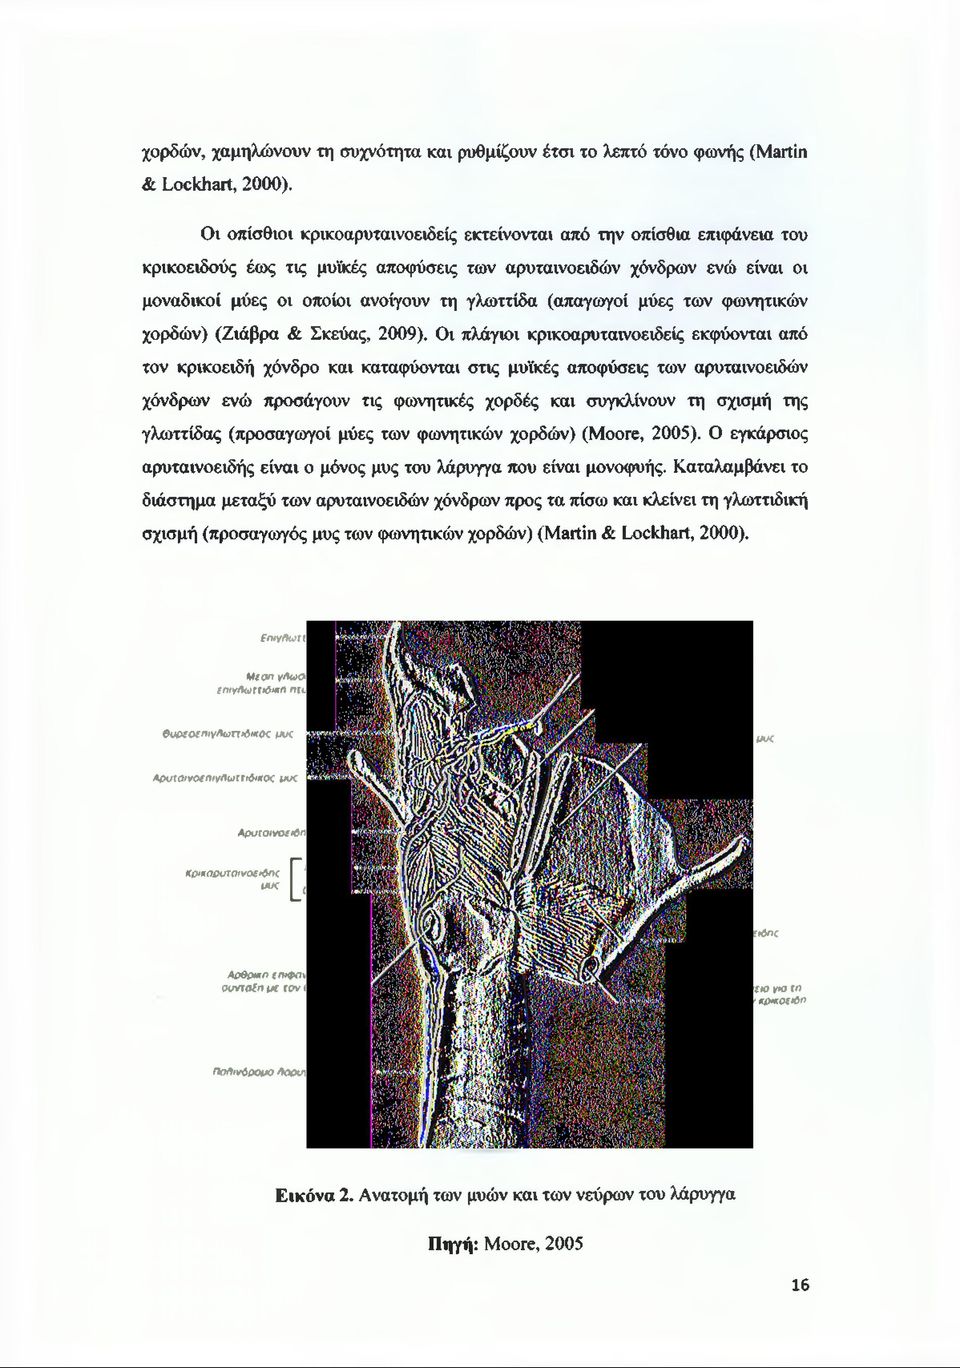 (απαγωγοί μύες των φωνητικών χορδών) (Ζιάβρα & Σκεύας, 2009).